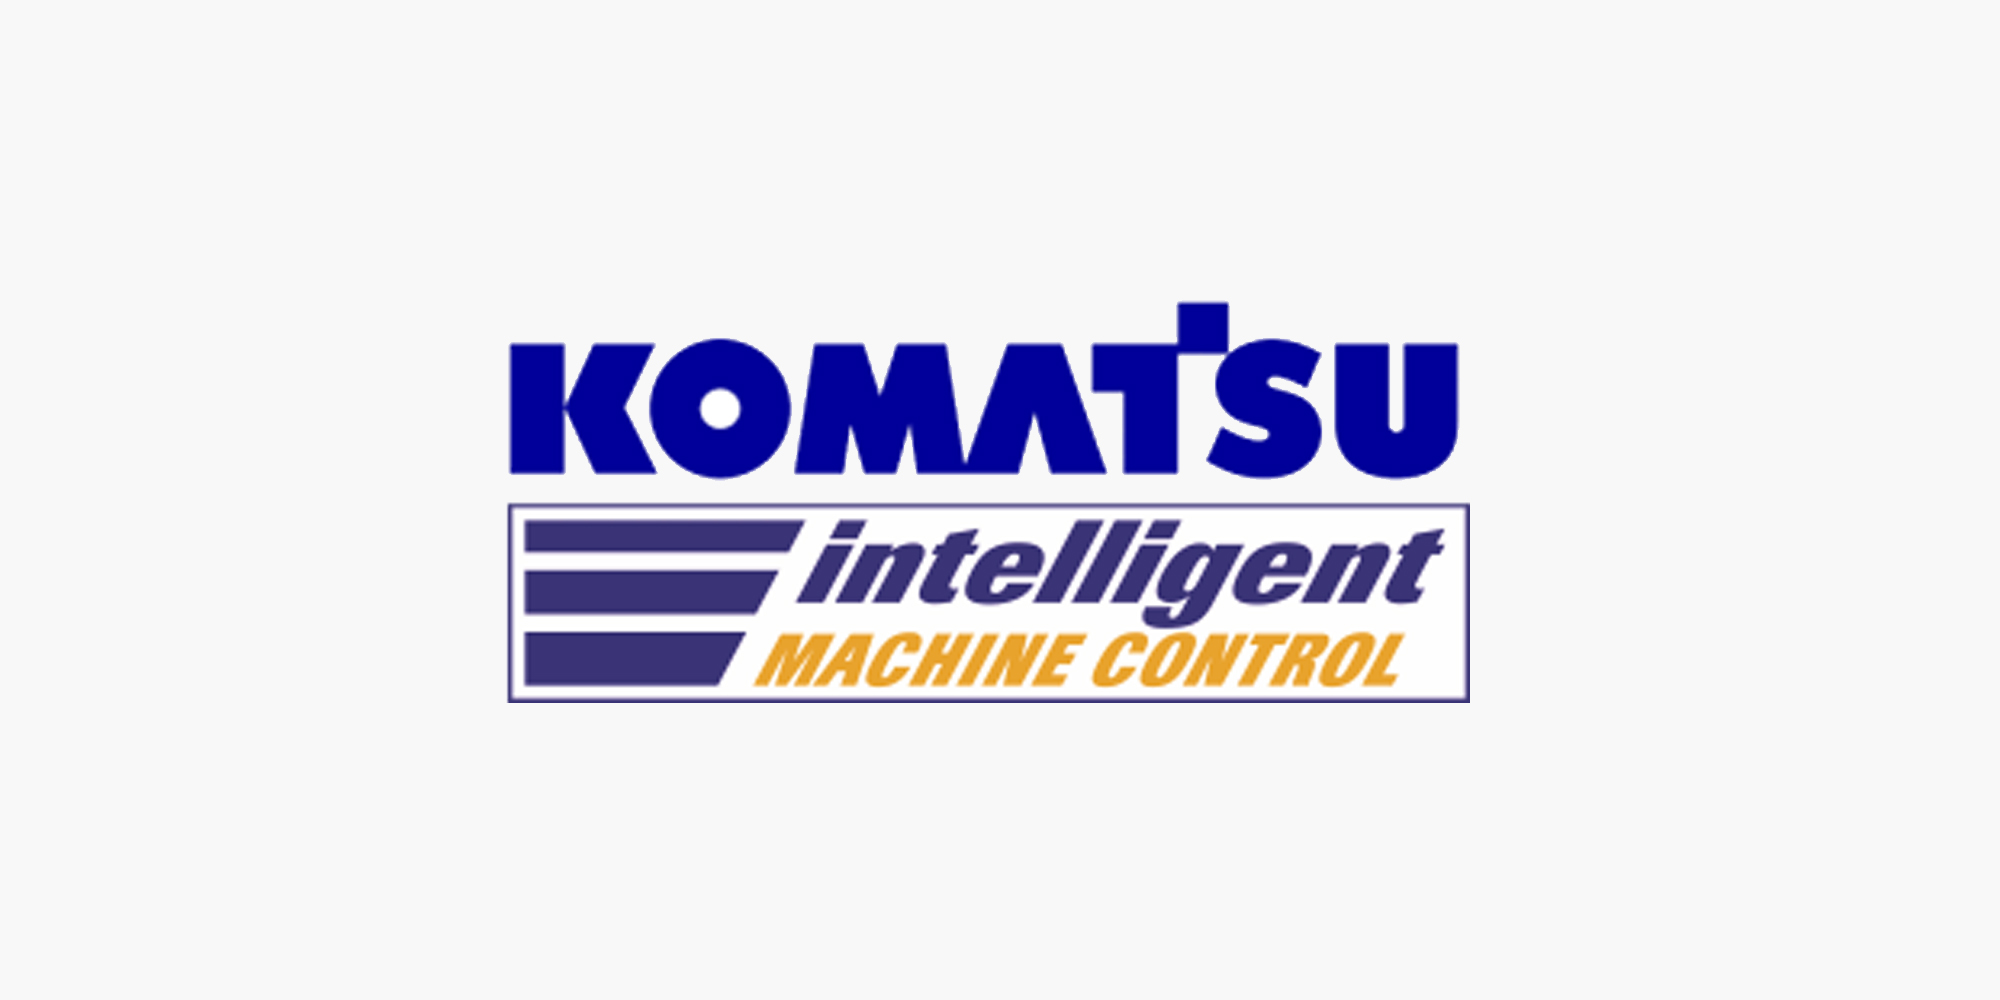 What is Komatsu intelligent Machine Control (Komatsu iMC)? Do You Need It?